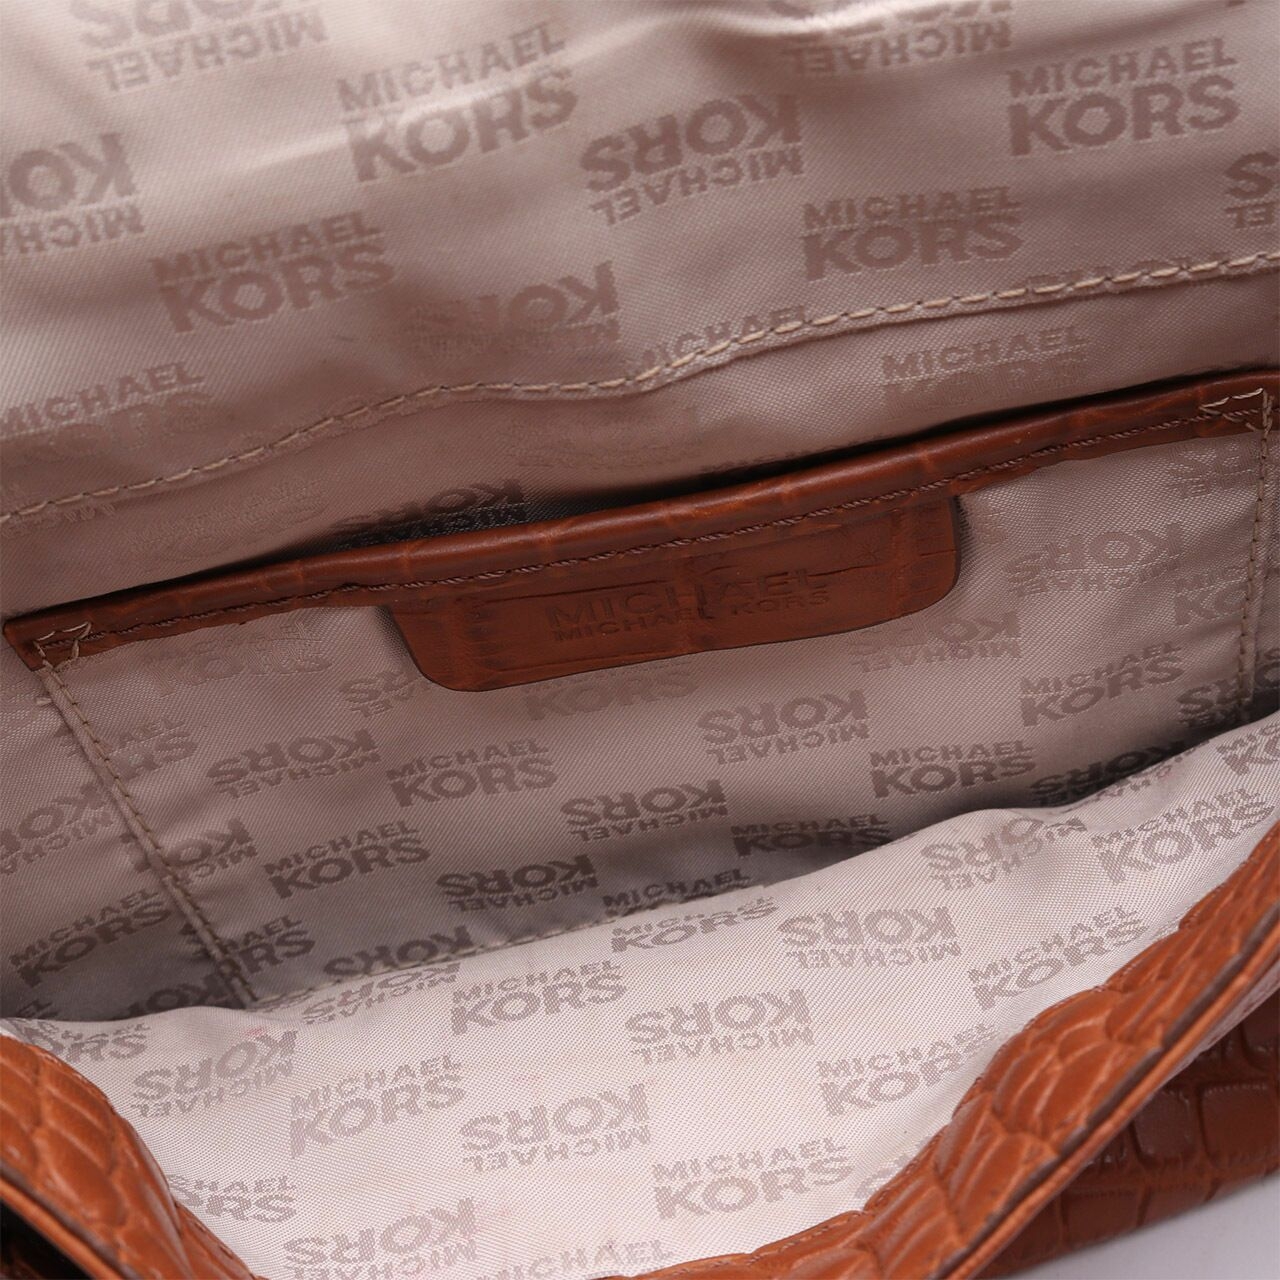 Michael Kors Brown Embossed Leather Sling Bag